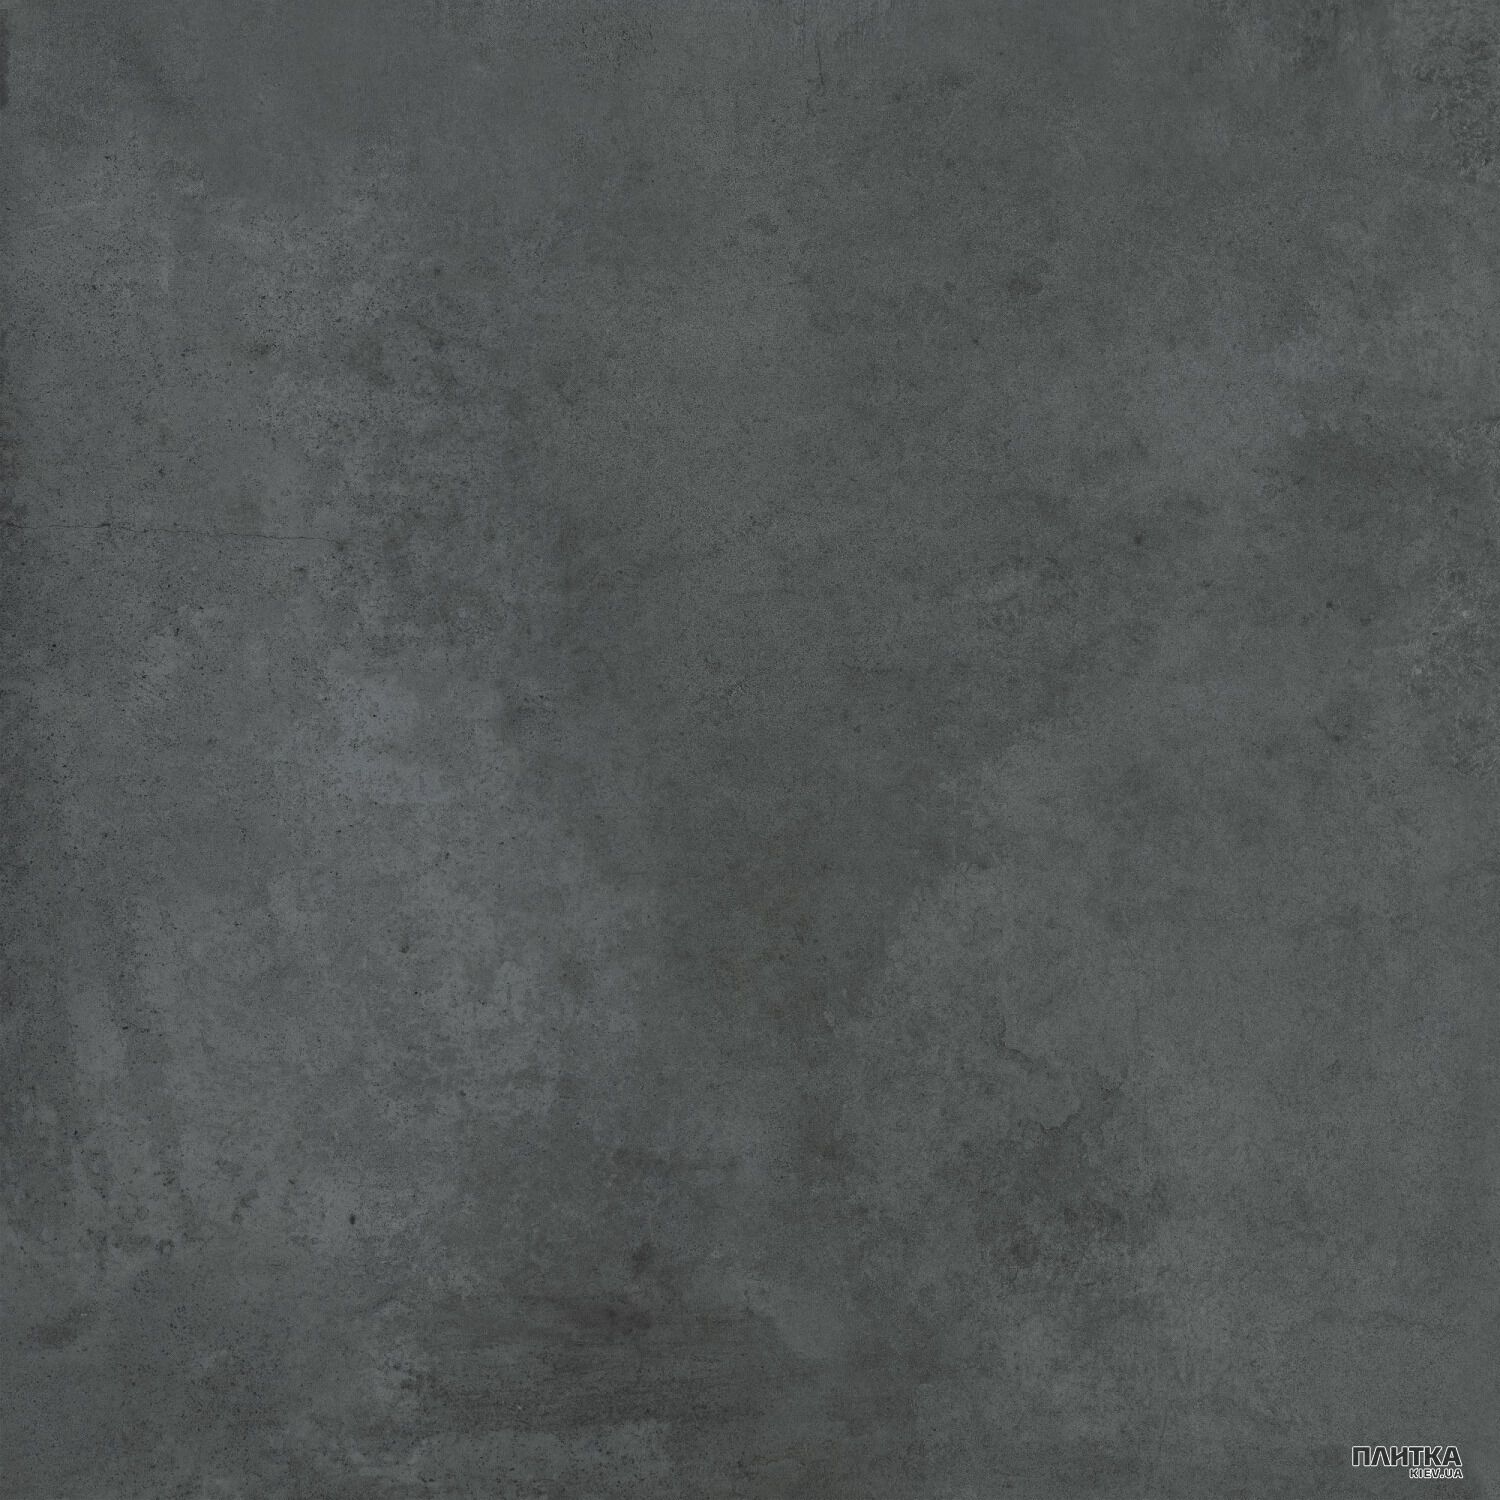 Керамогранит Golden Tile Hygge HYGGE Темно-Серый N4П510 темно-серый - Фото 1